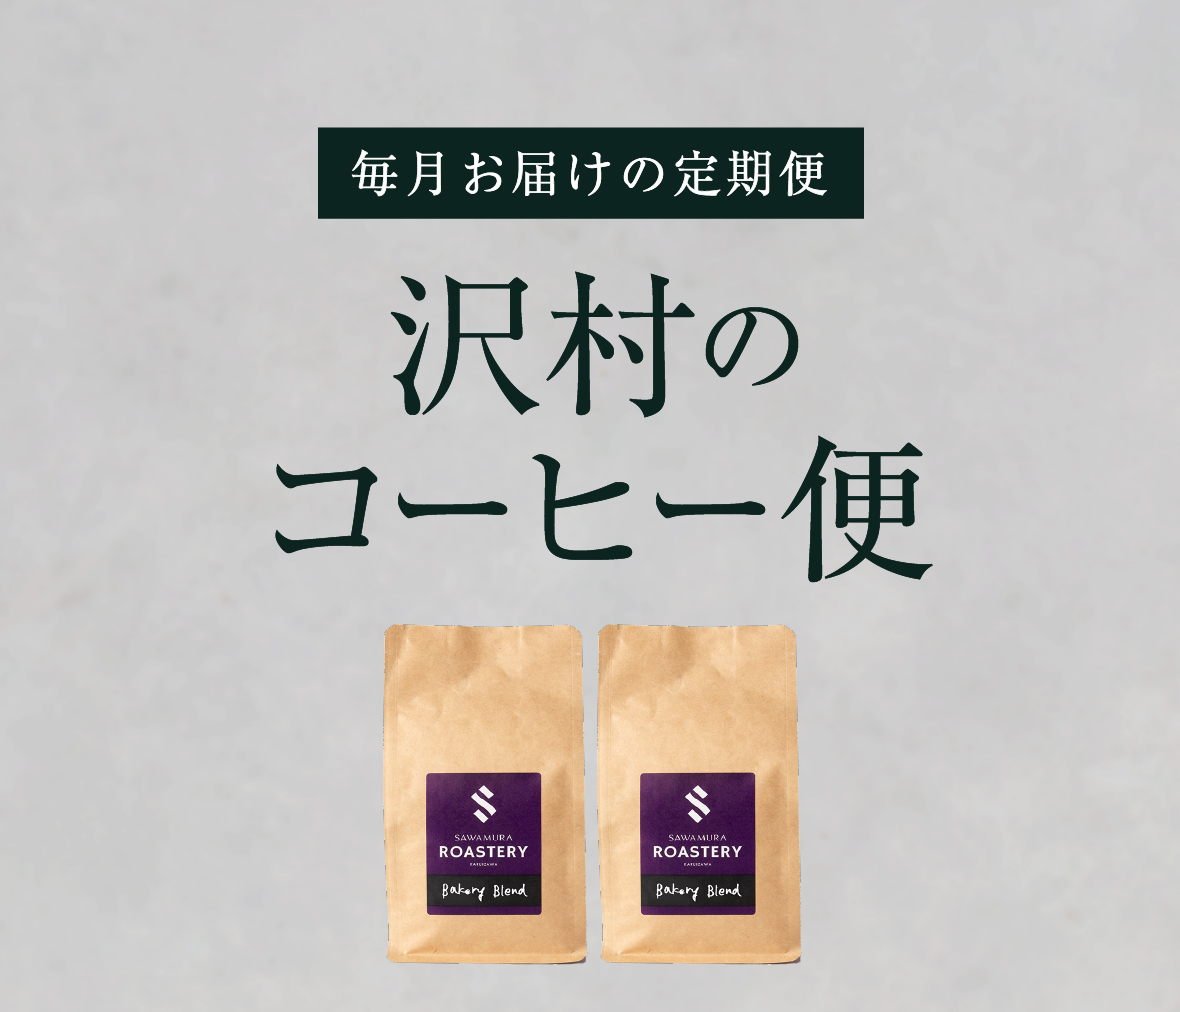 【沢村のコーヒー便】おすすめコーヒーセット